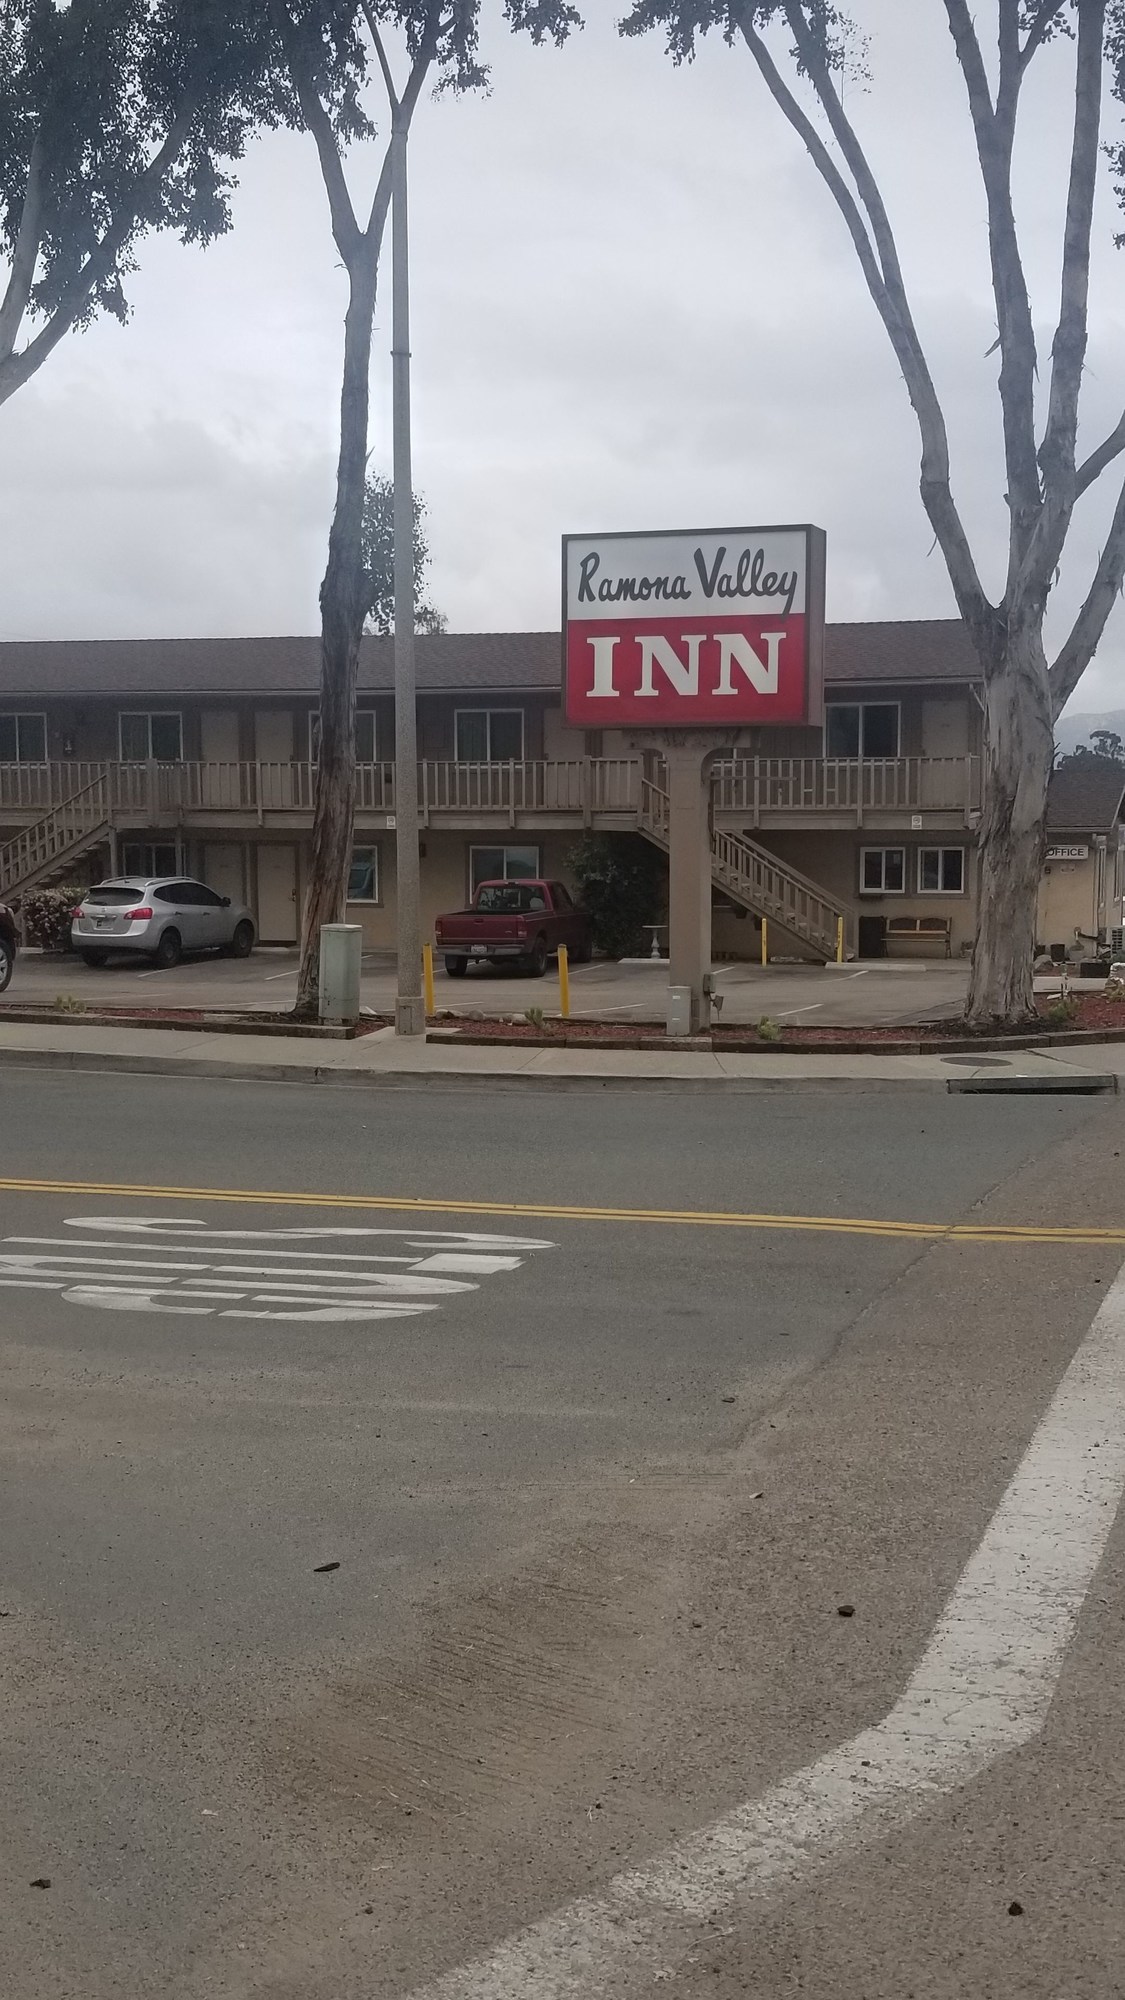 Ramona Valley Inn